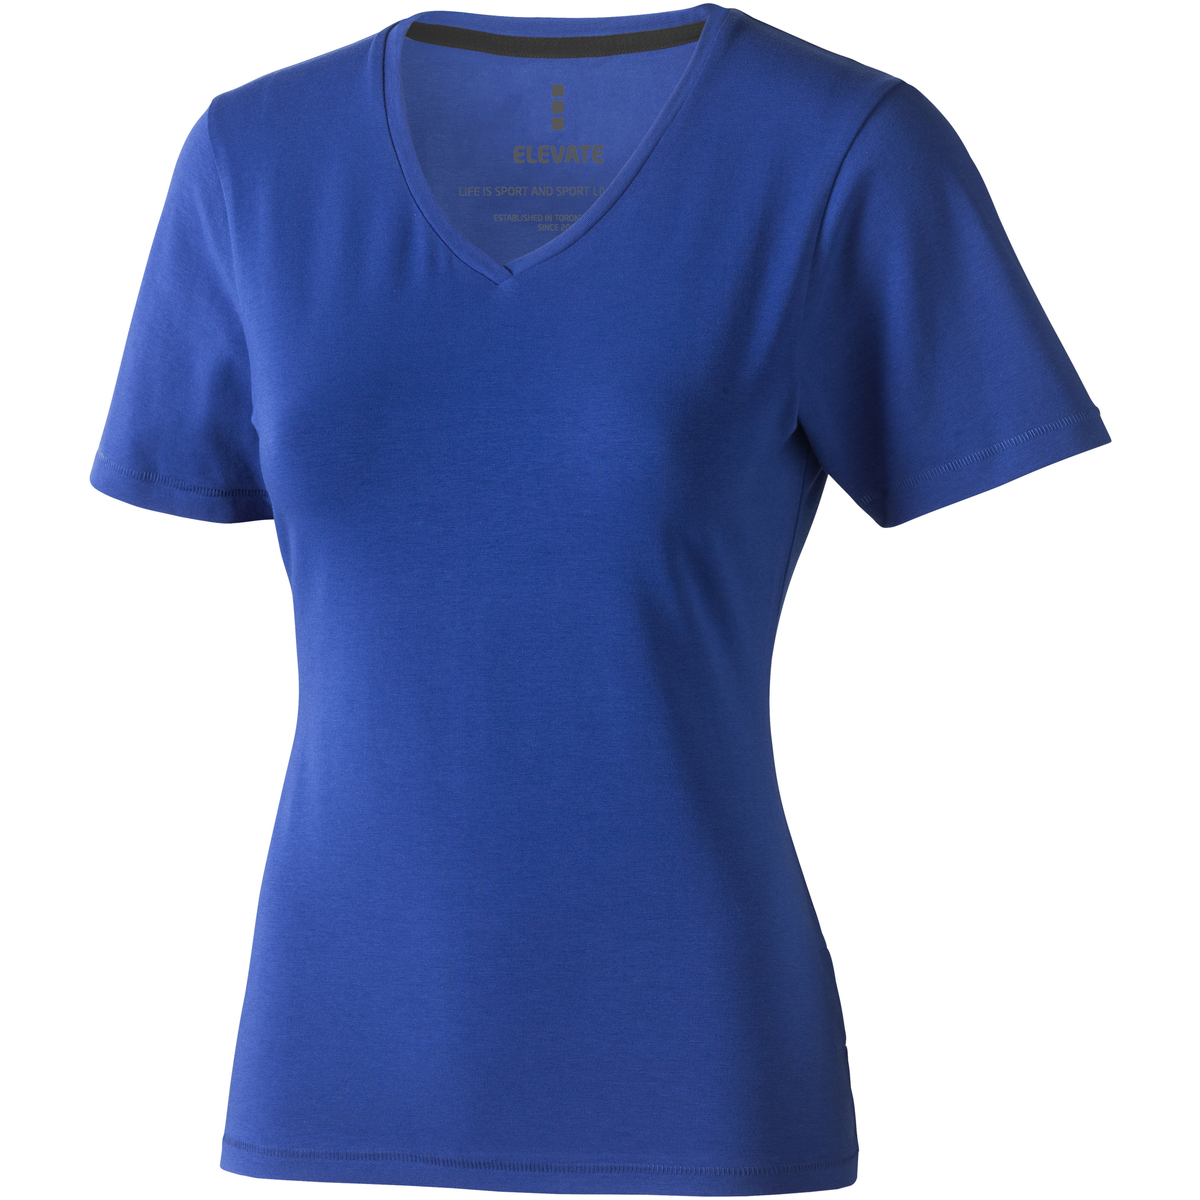 Vêtements Femme PUMA x Butter Goods T-shirt Kawartha Bleu